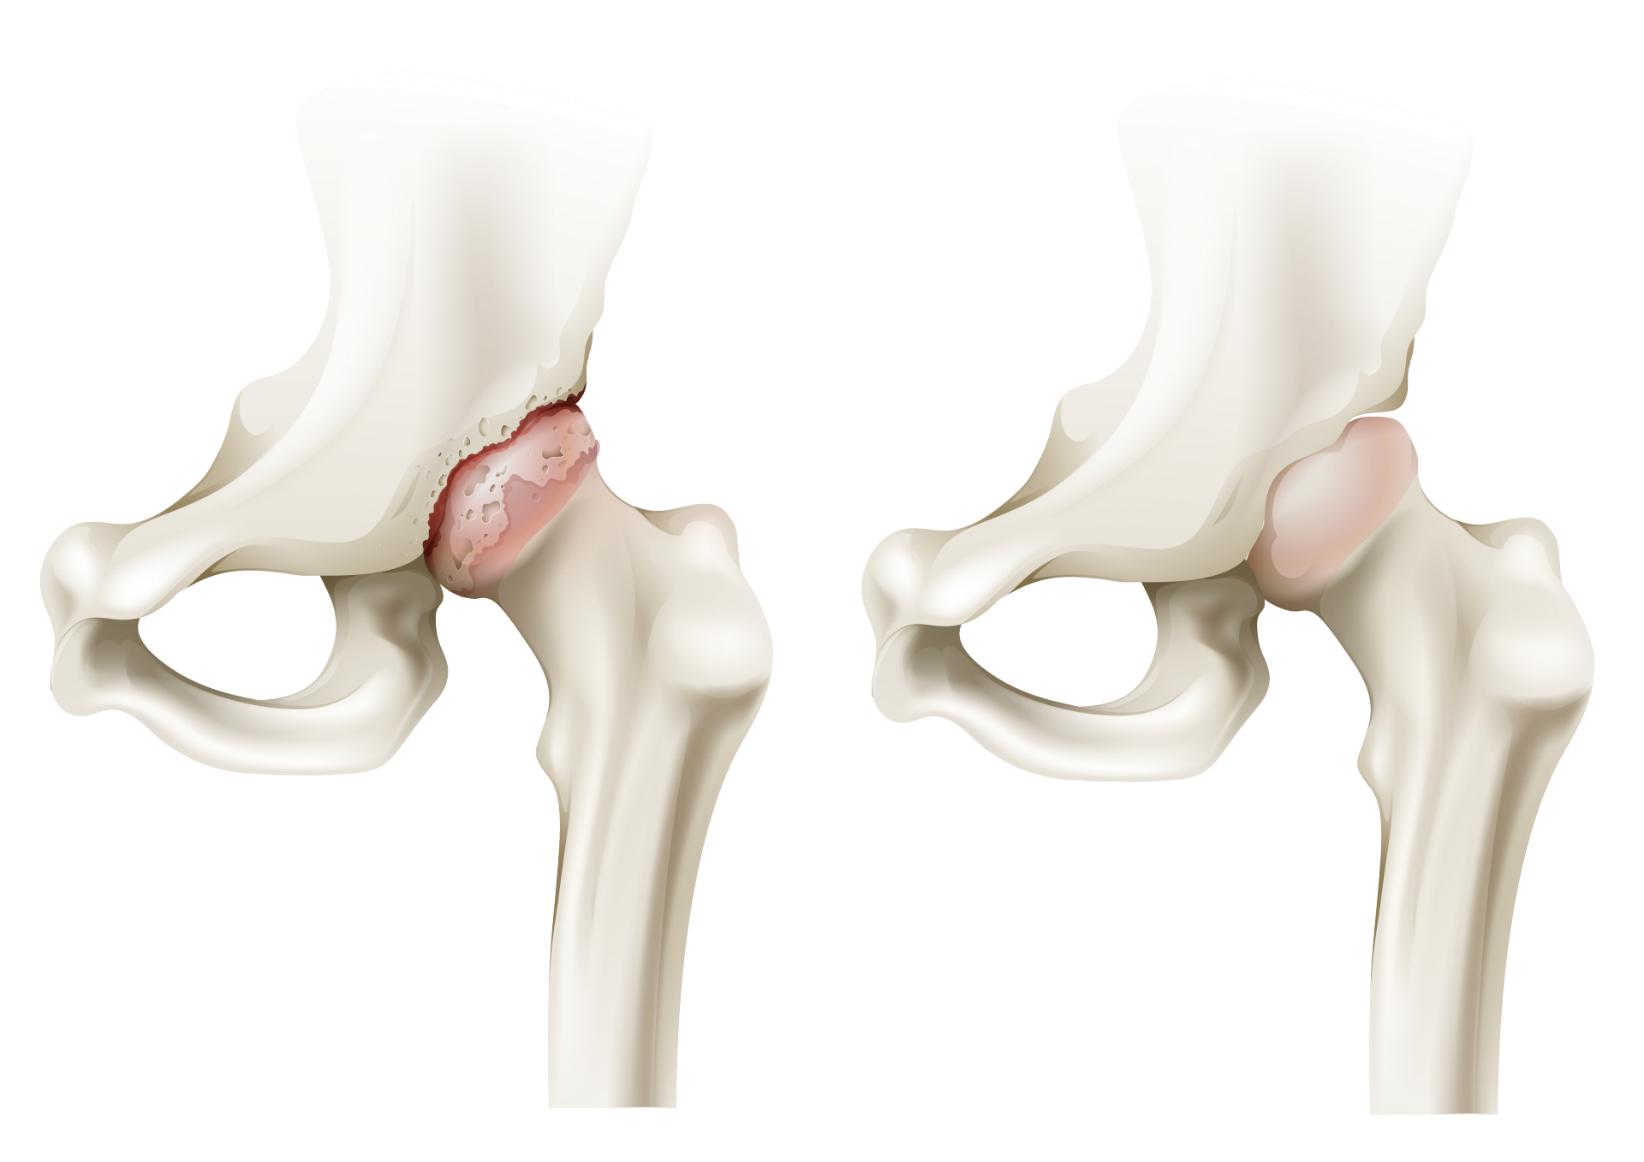 Артроз операция тазобедренного сустава. Артропатия тазобедренного сустава. Костный артрит тазобедренного сустава. Коксартроза тазобедренного сустава. Тазобедренный сустав анатомия артроз.